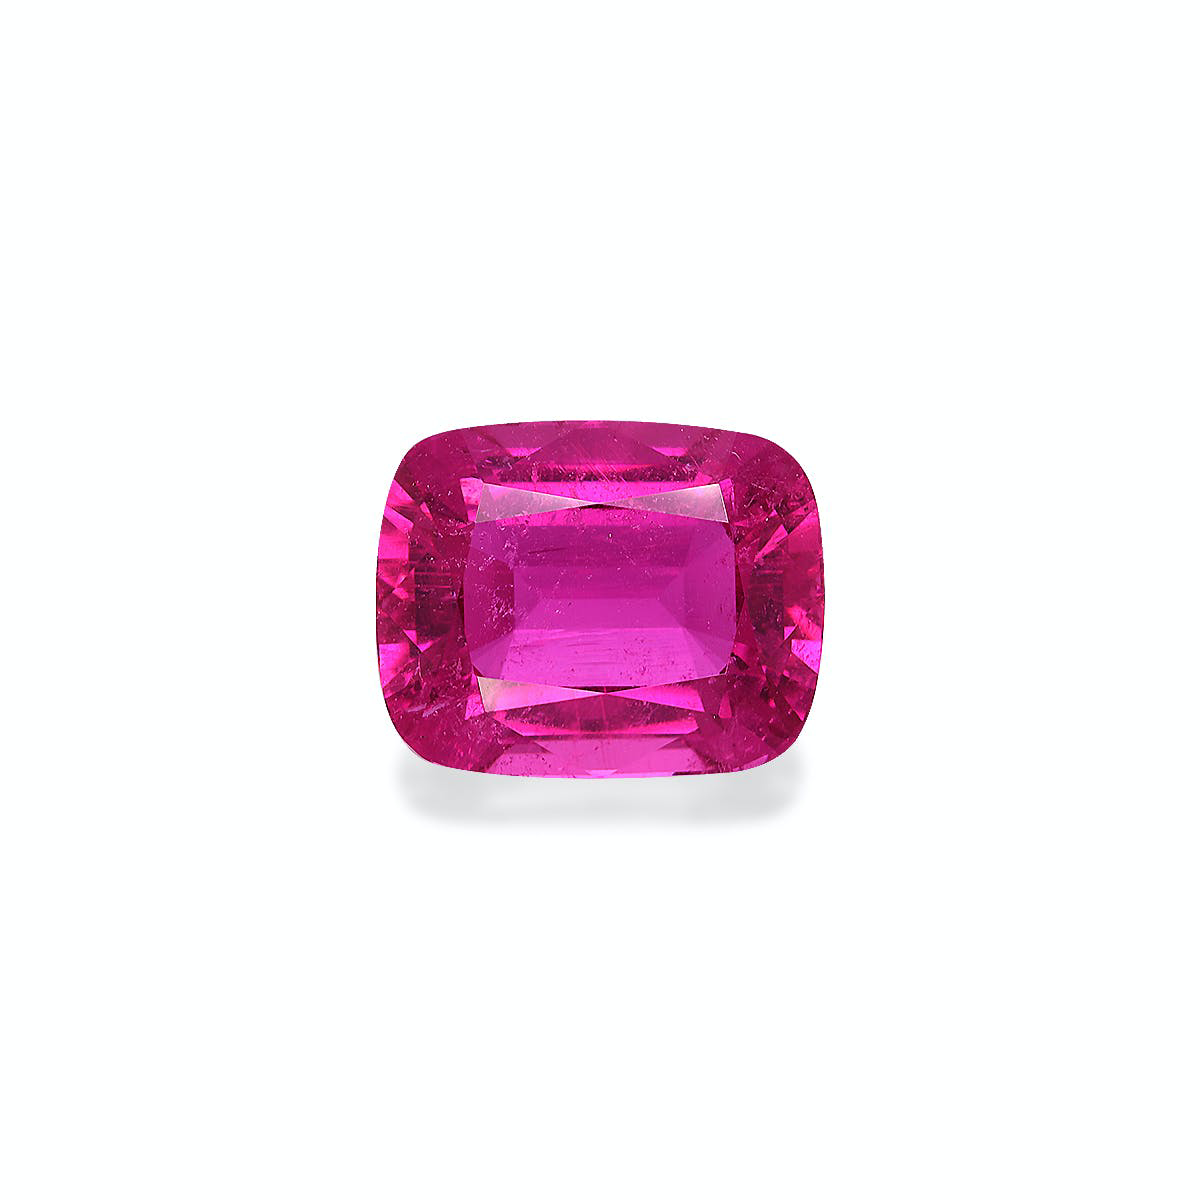 Vivid Pink Rubellite Tourmaline 19.07ct (RL1186)